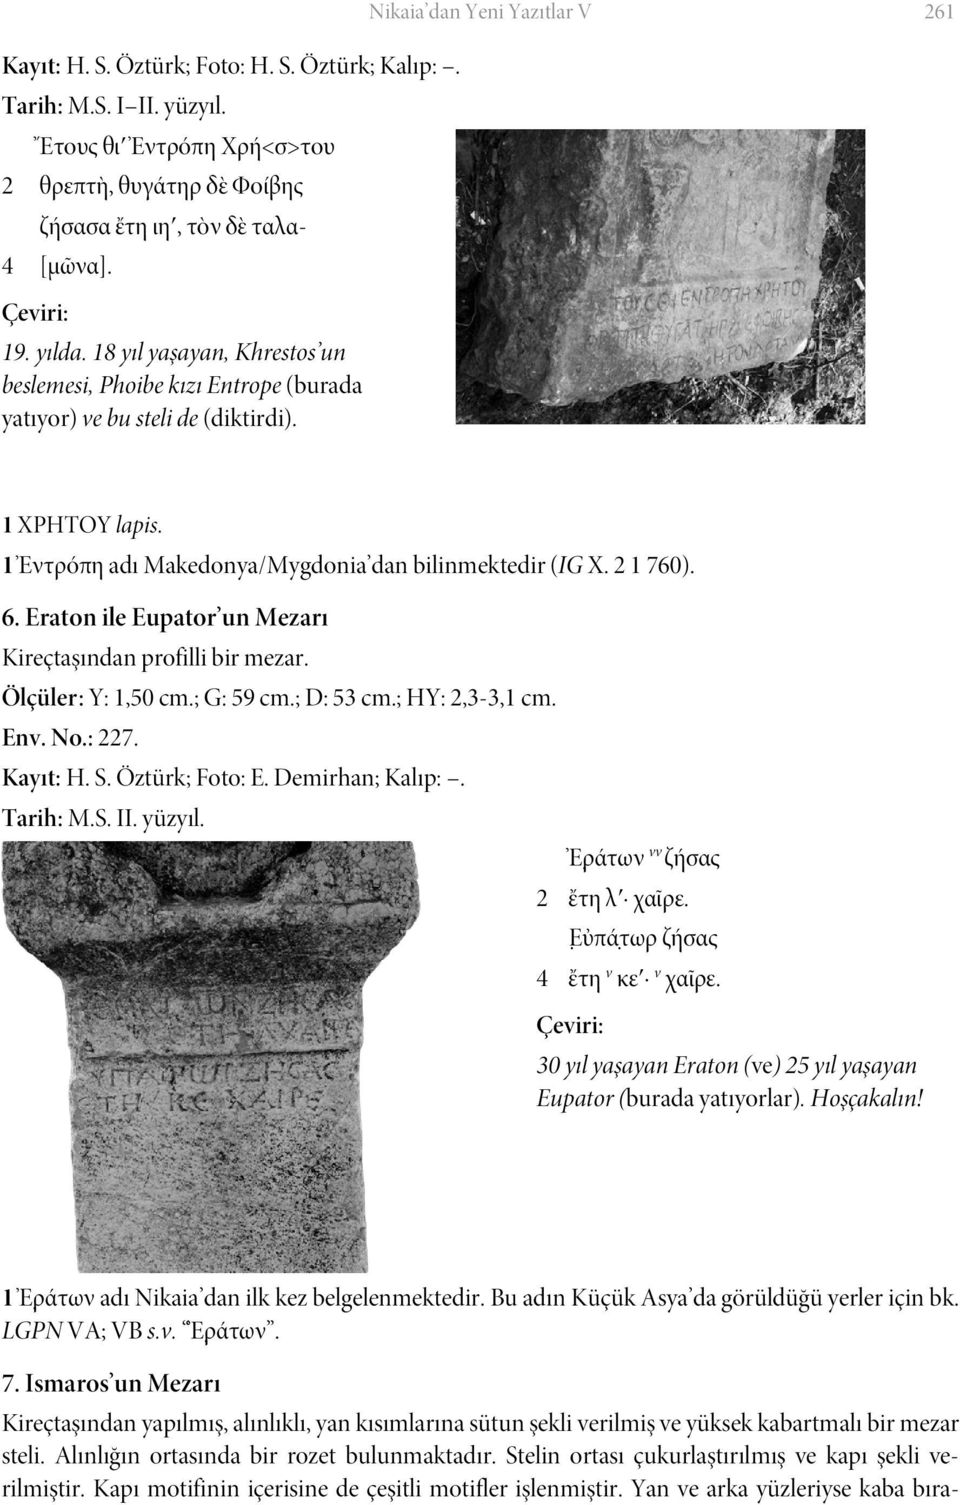 1 Ἐντρόπη adı Makedonya/Mygdonia dan bilinmektedir (IG X. 2 1 760). 6. Eraton ile Eupator un Mezarı Kireçtaşından profilli bir mezar. Ölçüler : Y: 1,50 cm.; G: 59 cm.; D: 53 cm.; HY: 2,3-3,1 cm. Env.